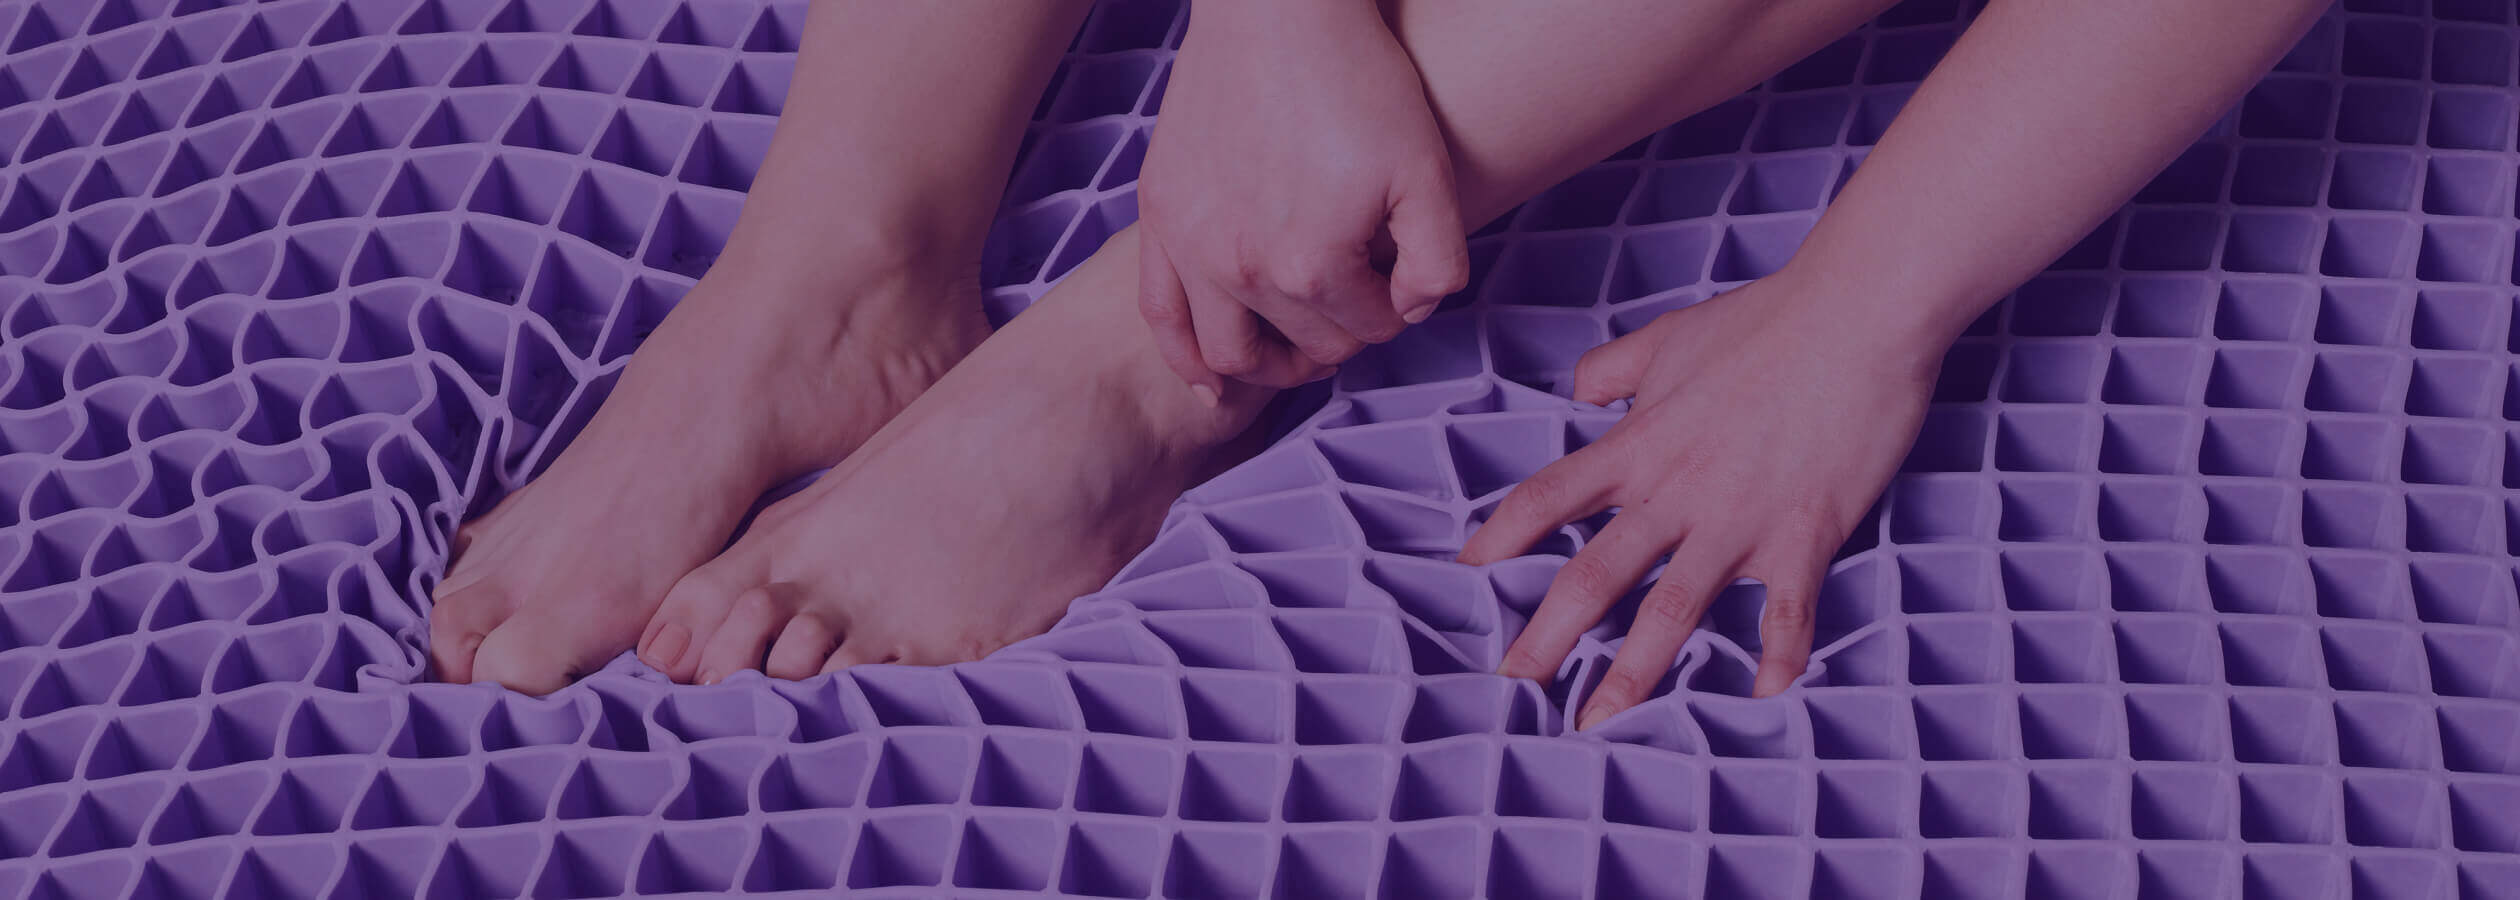 purple mattress gelflex grid